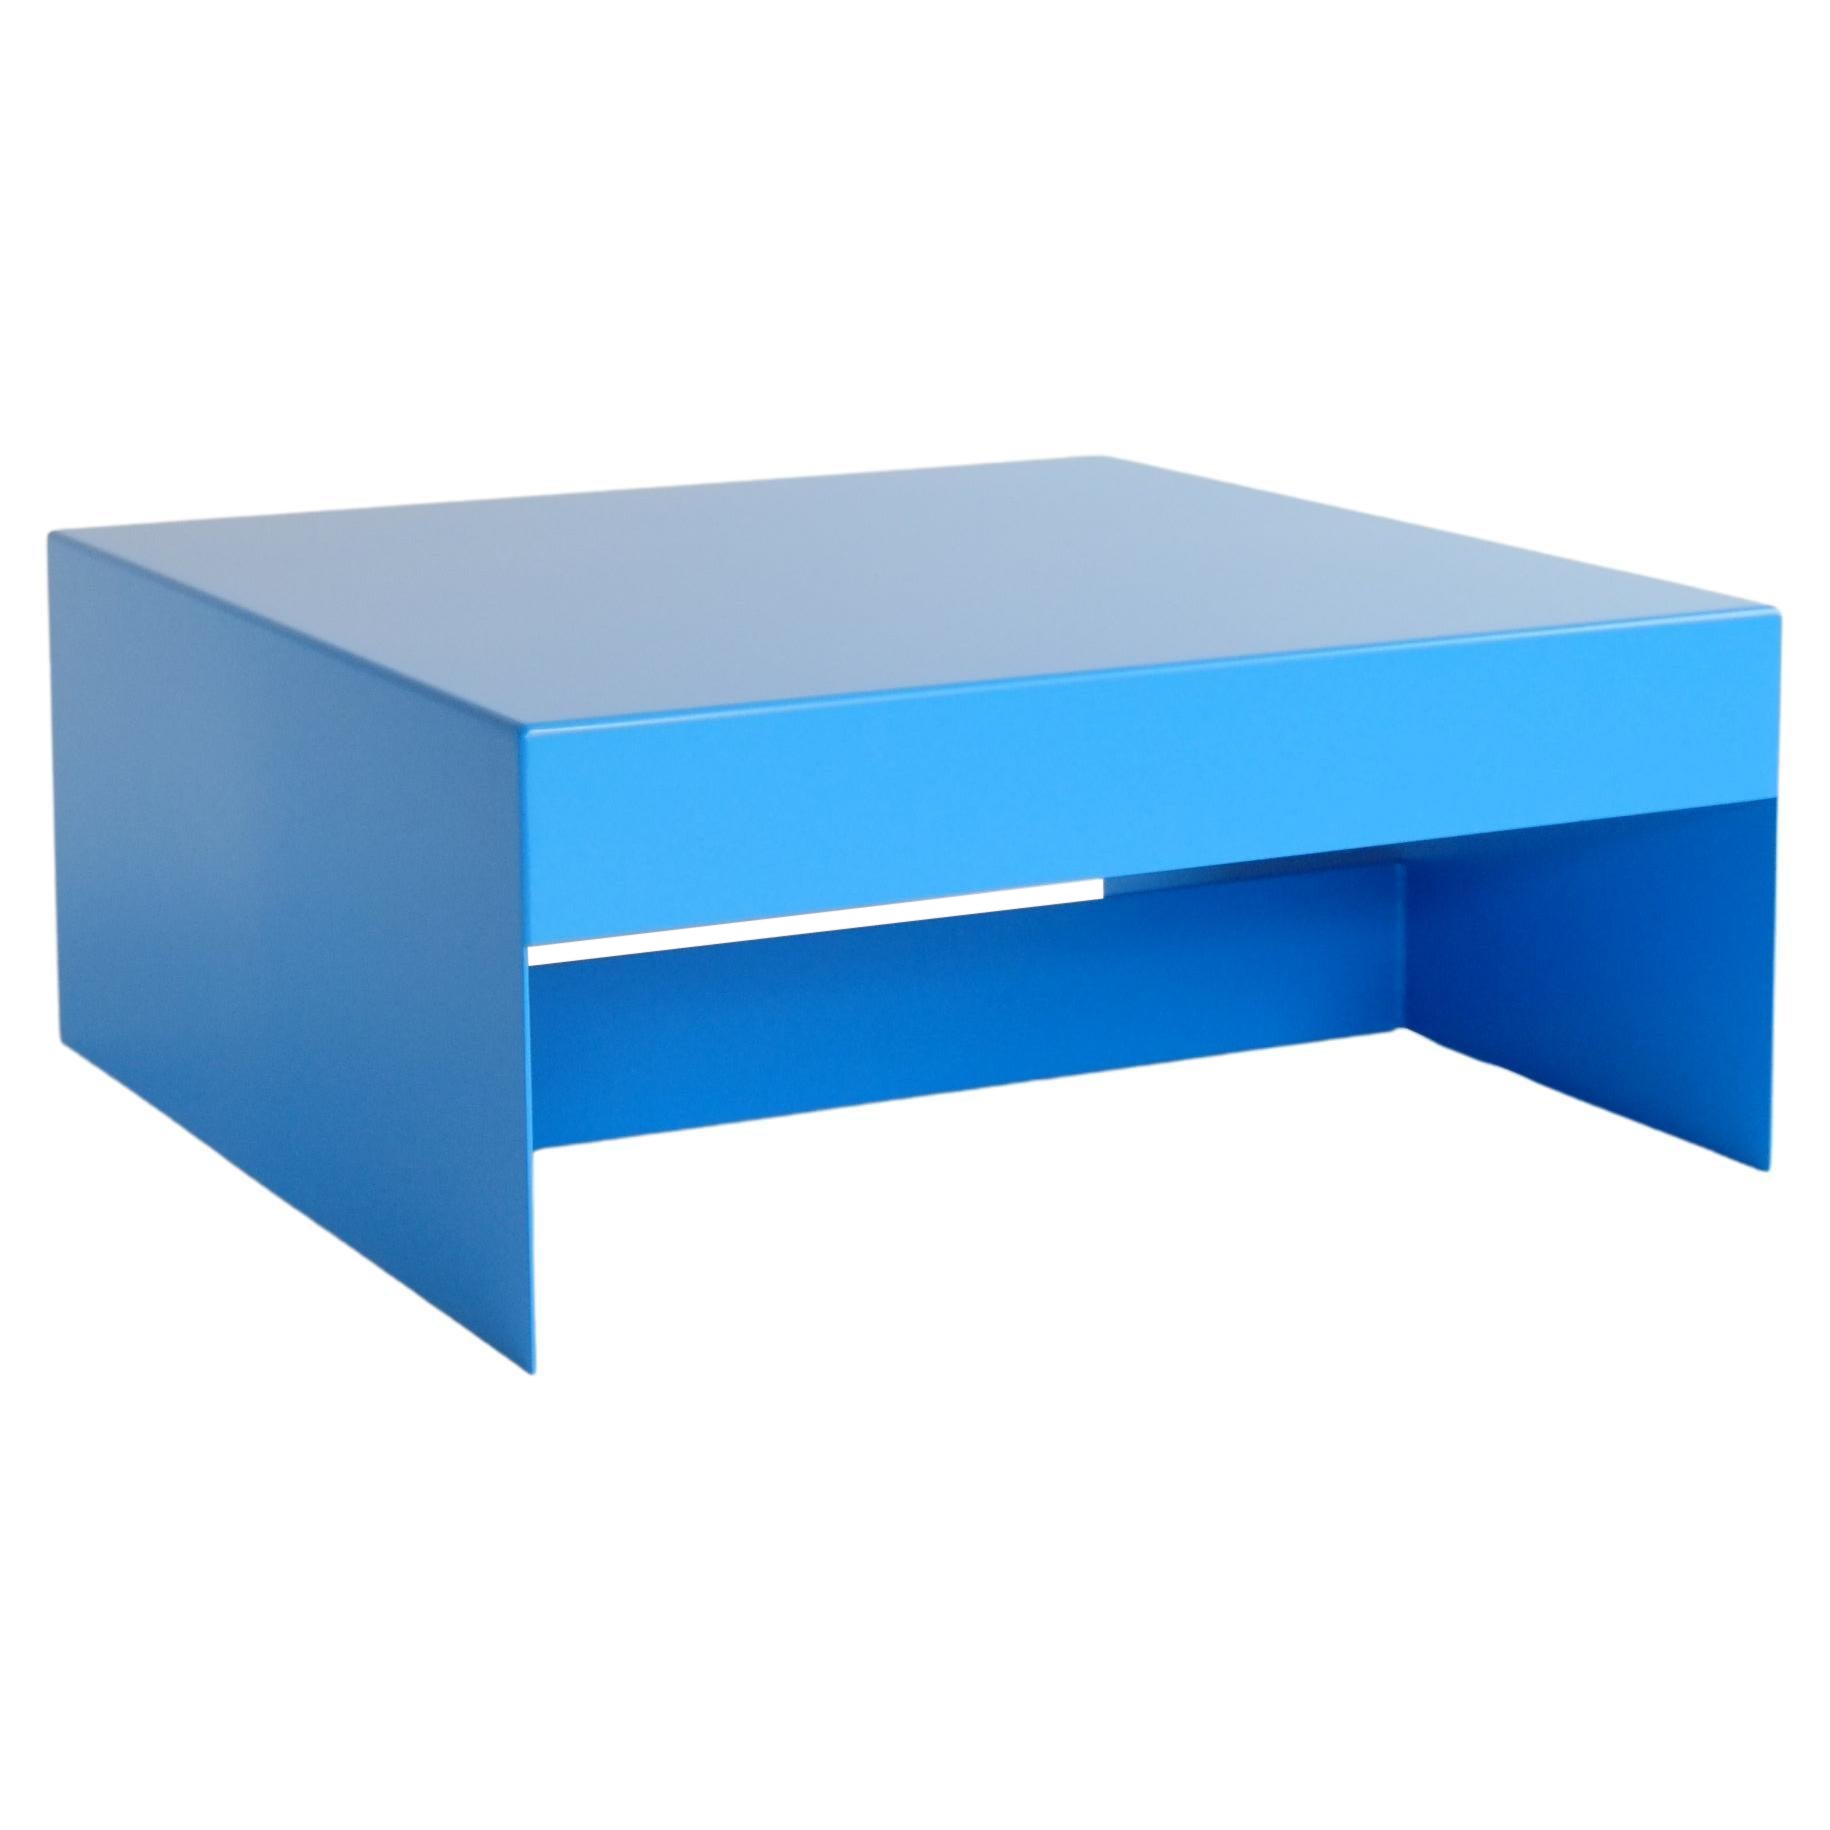 Table basse carrée en aluminium bleu, personnalisable, pour l'intérieur et l'extérieur.